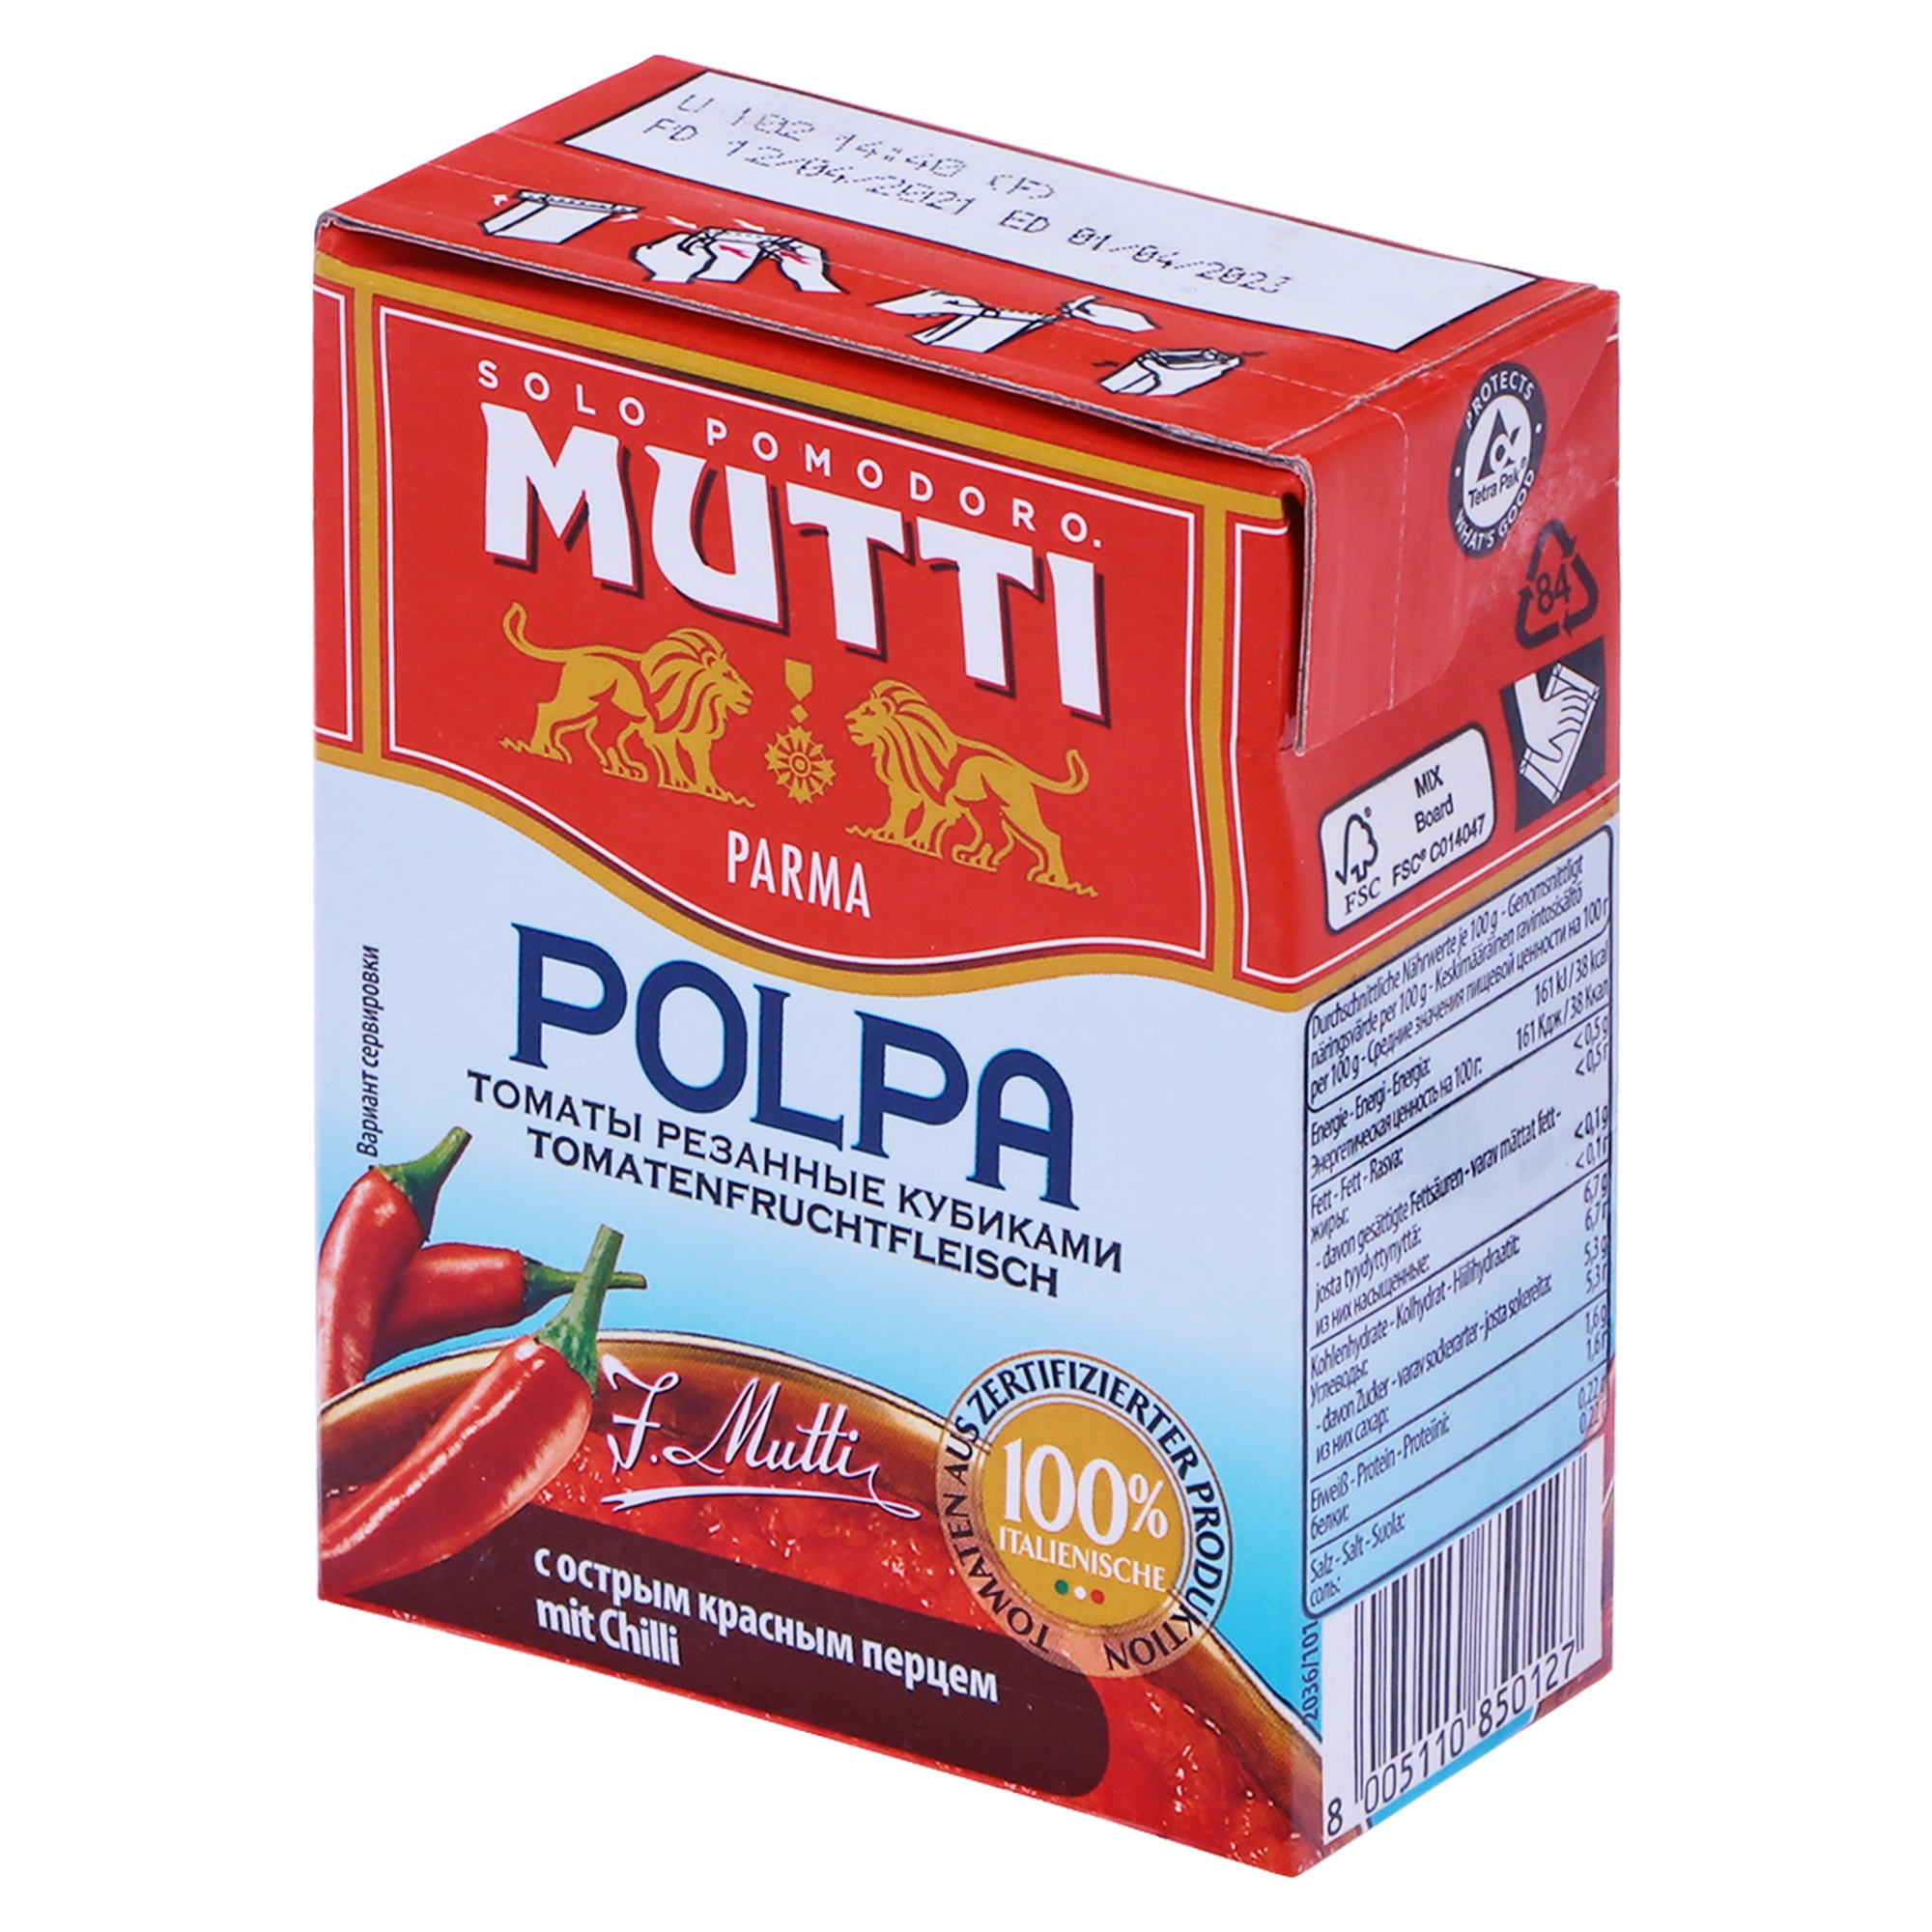 Томаты резаные Mutti с острым перцем 390 г томаты вяленые romatto с прованскими травами в масле 250 г